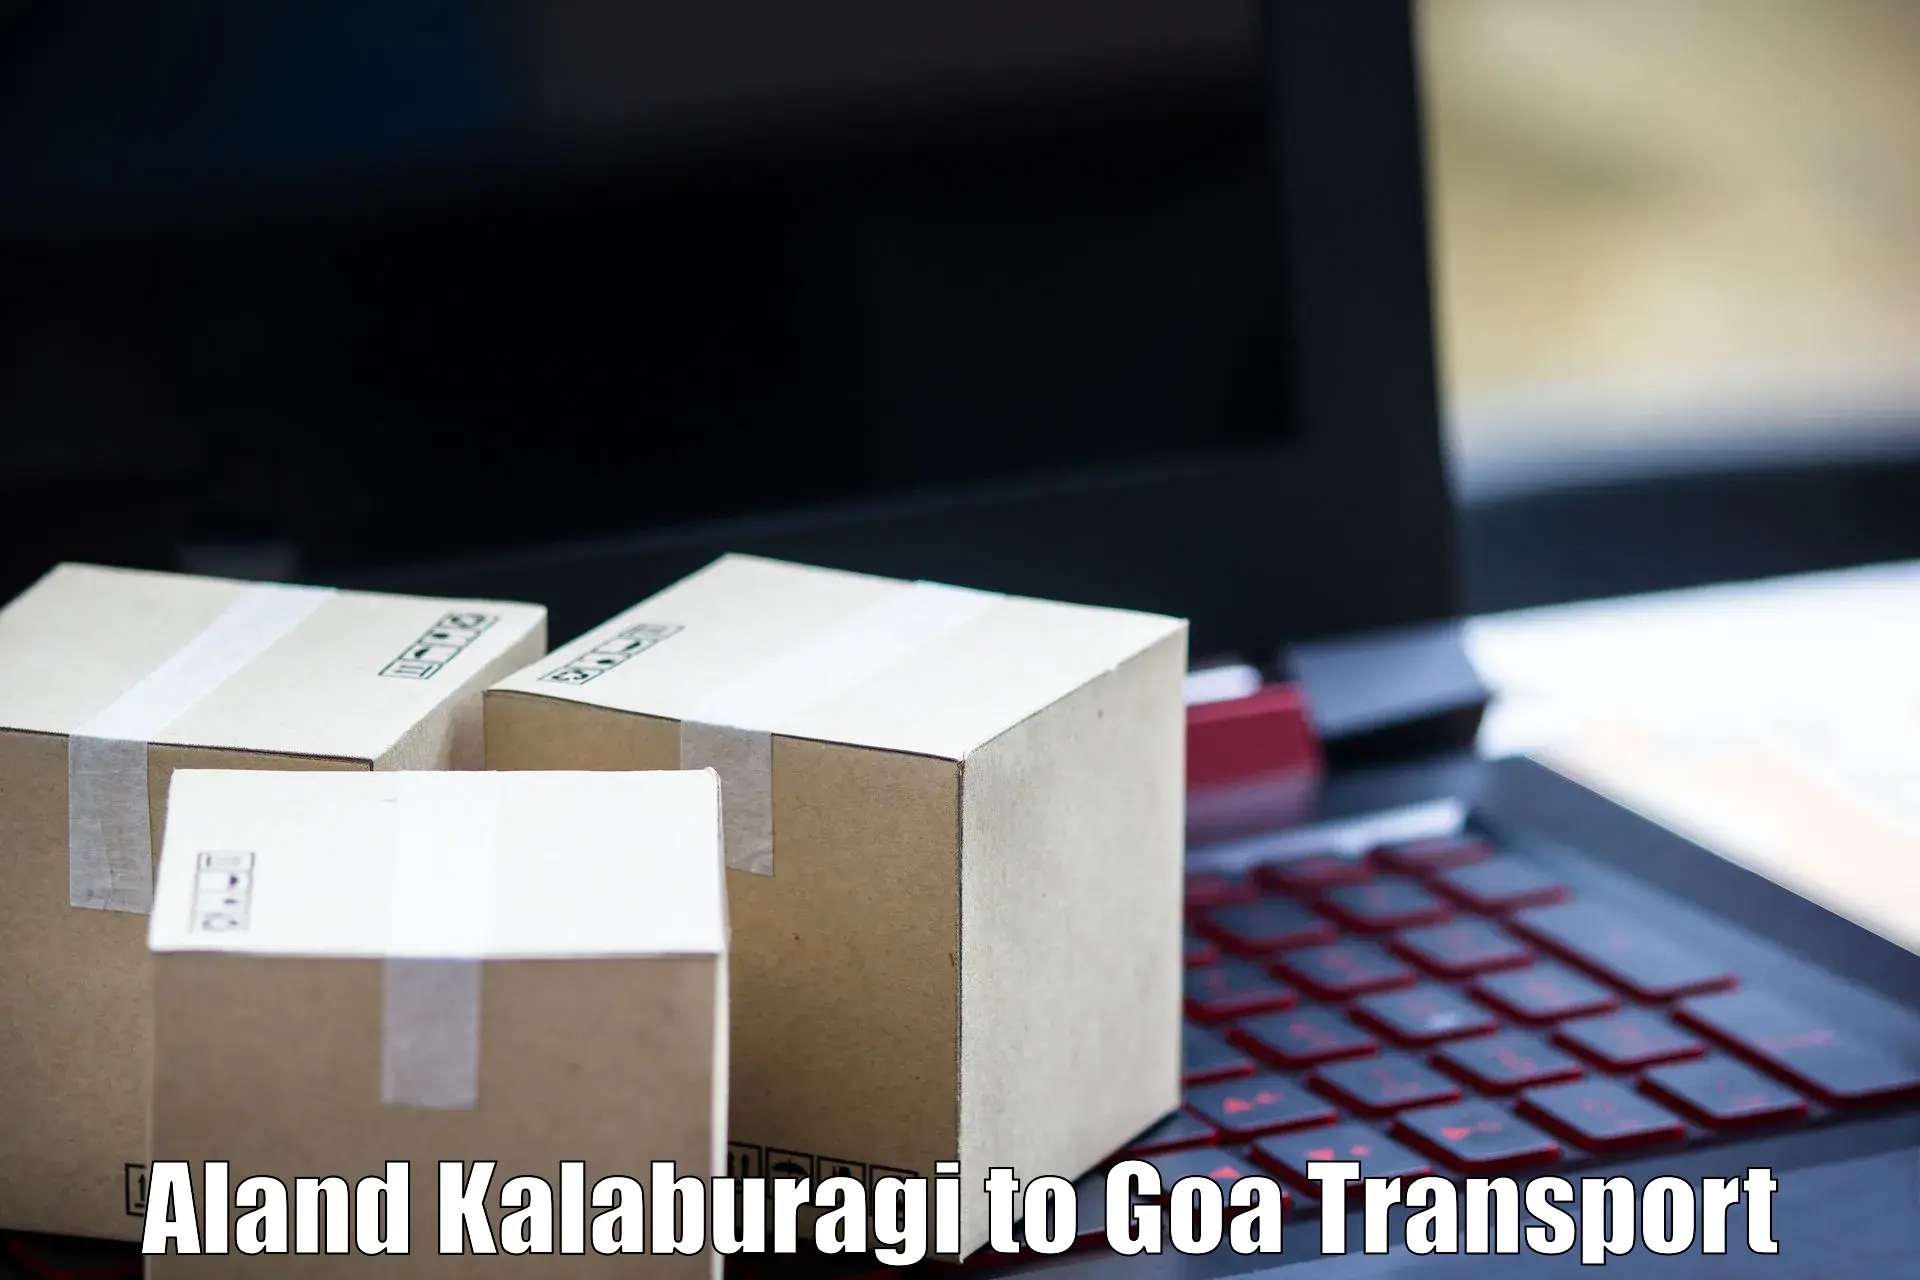 Door to door transport services in Aland Kalaburagi to NIT Goa